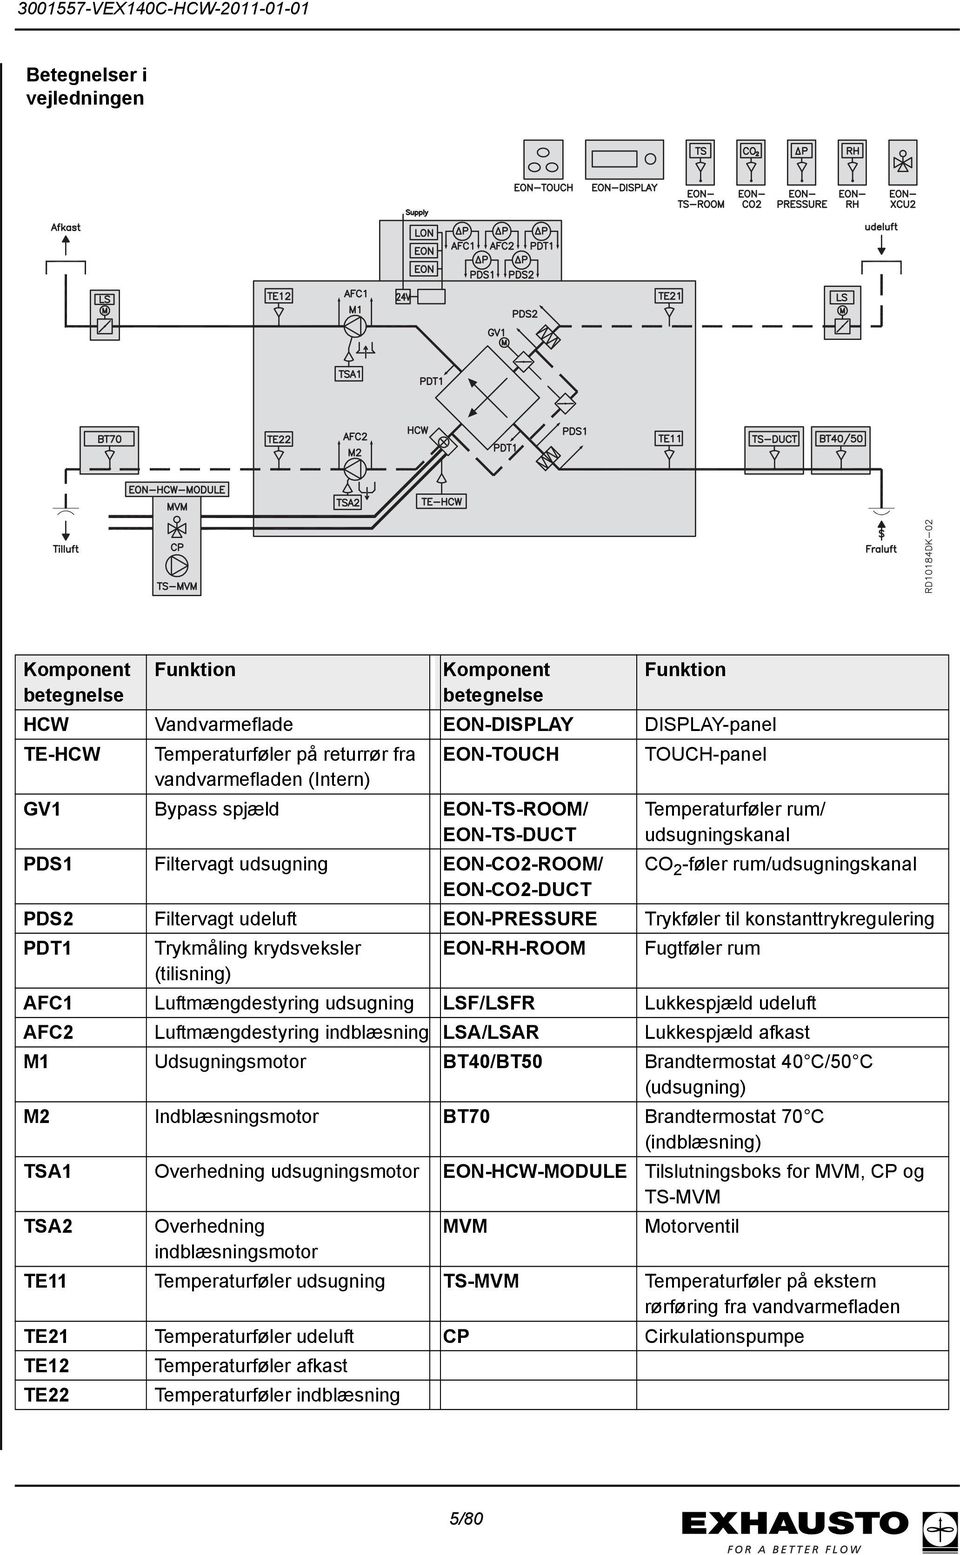 Filtervagt udeluft EON-PRESSURE Trykføler til konstanttrykregulering PDT1 Trykmåling krydsveksler EON-RH-ROOM Fugtføler rum (tilisning) AFC1 Luftmængdestyring udsugning LSF/LSFR Lukkespjæld udeluft